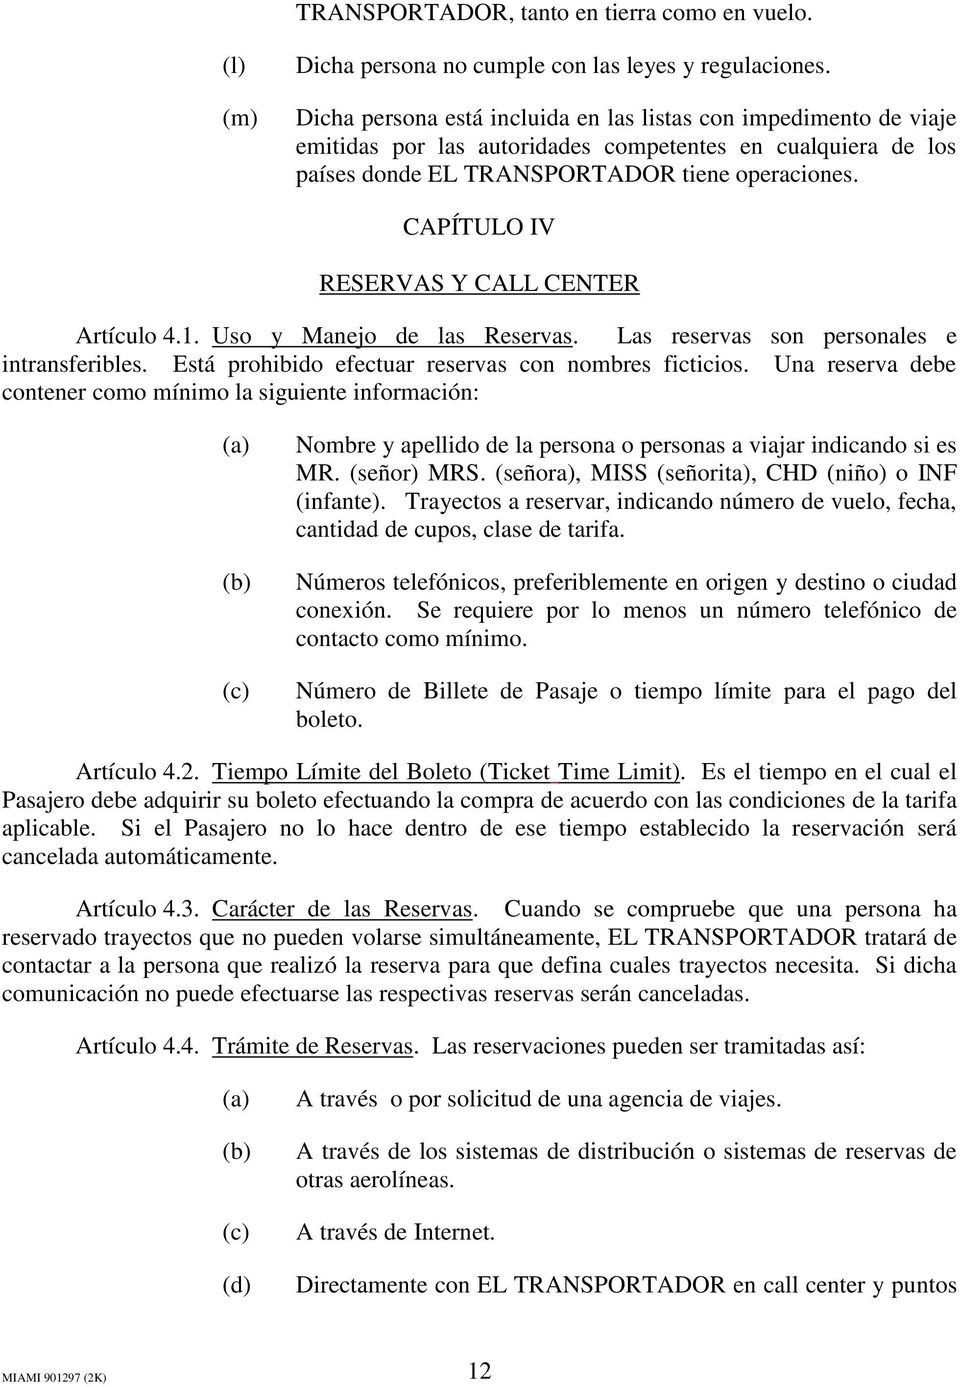 CAPÍTULO IV RESERVAS Y CALL CENTER Artículo 4.1. Uso y Manejo de las Reservas. Las reservas son personales e intransferibles. Está prohibido efectuar reservas con nombres ficticios.